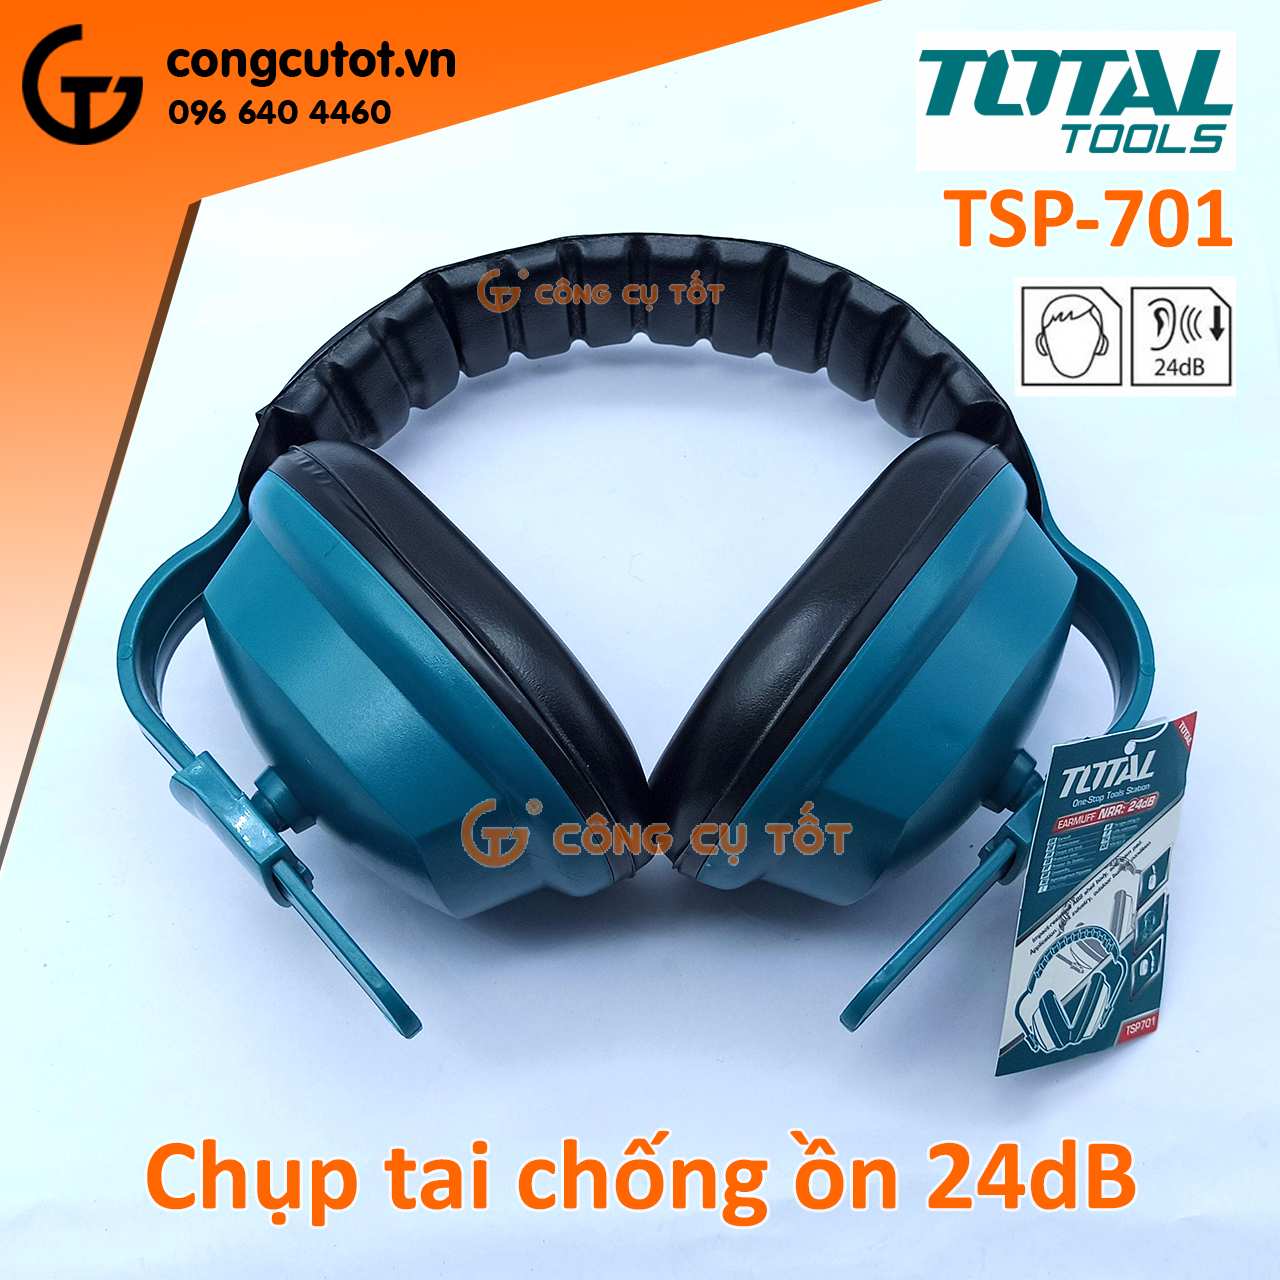 Chụp tai chống ồn Total TSP 701 độ giảm âm 24dB.